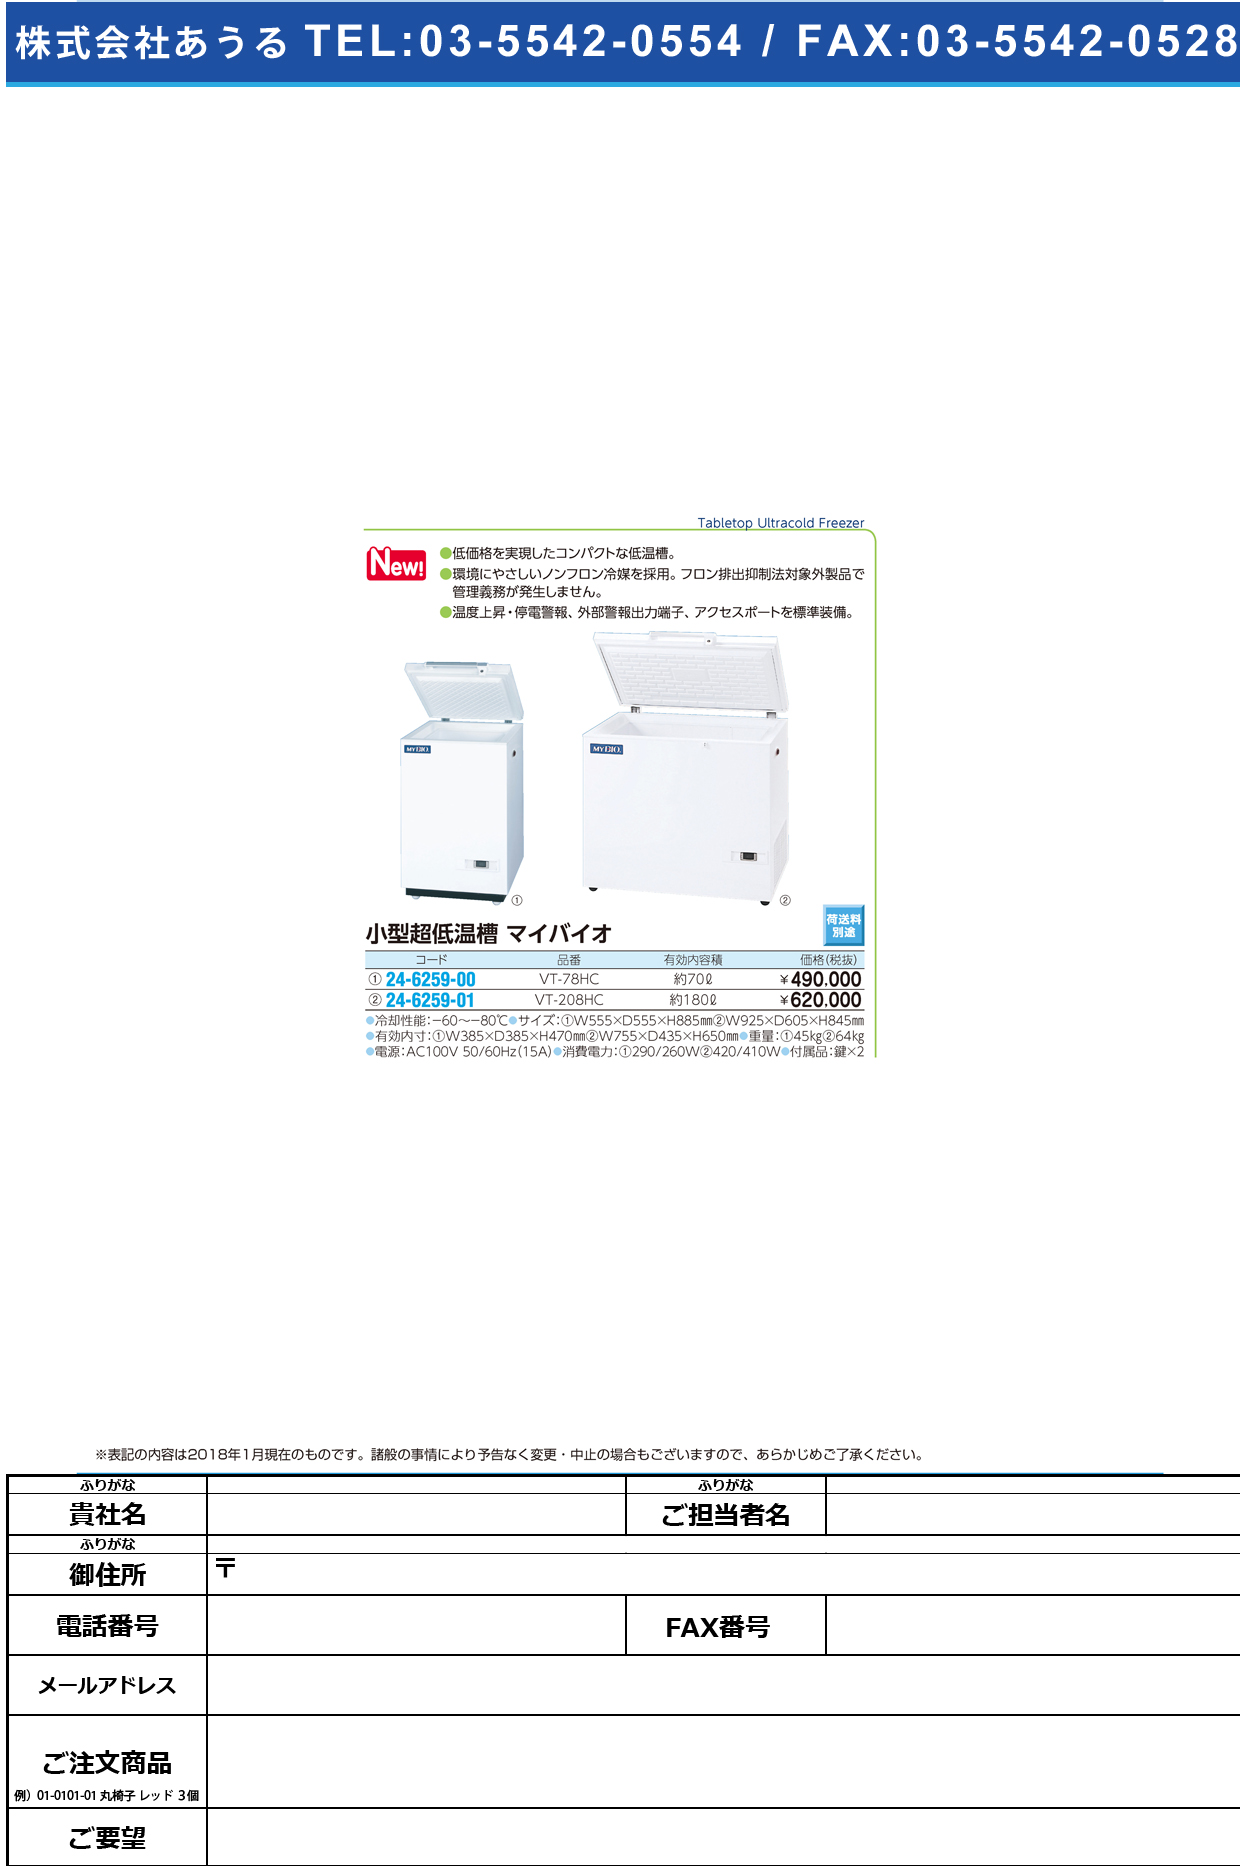 (24-6259-01)小型超低温槽マイバイオ VT-208HC(180L) ｺｶﾞﾀﾁｮｳﾃｲｵﾝｿｳﾏｲﾊﾞｲｵ(日本フリーザー)【1台単位】【2019年カタログ商品】